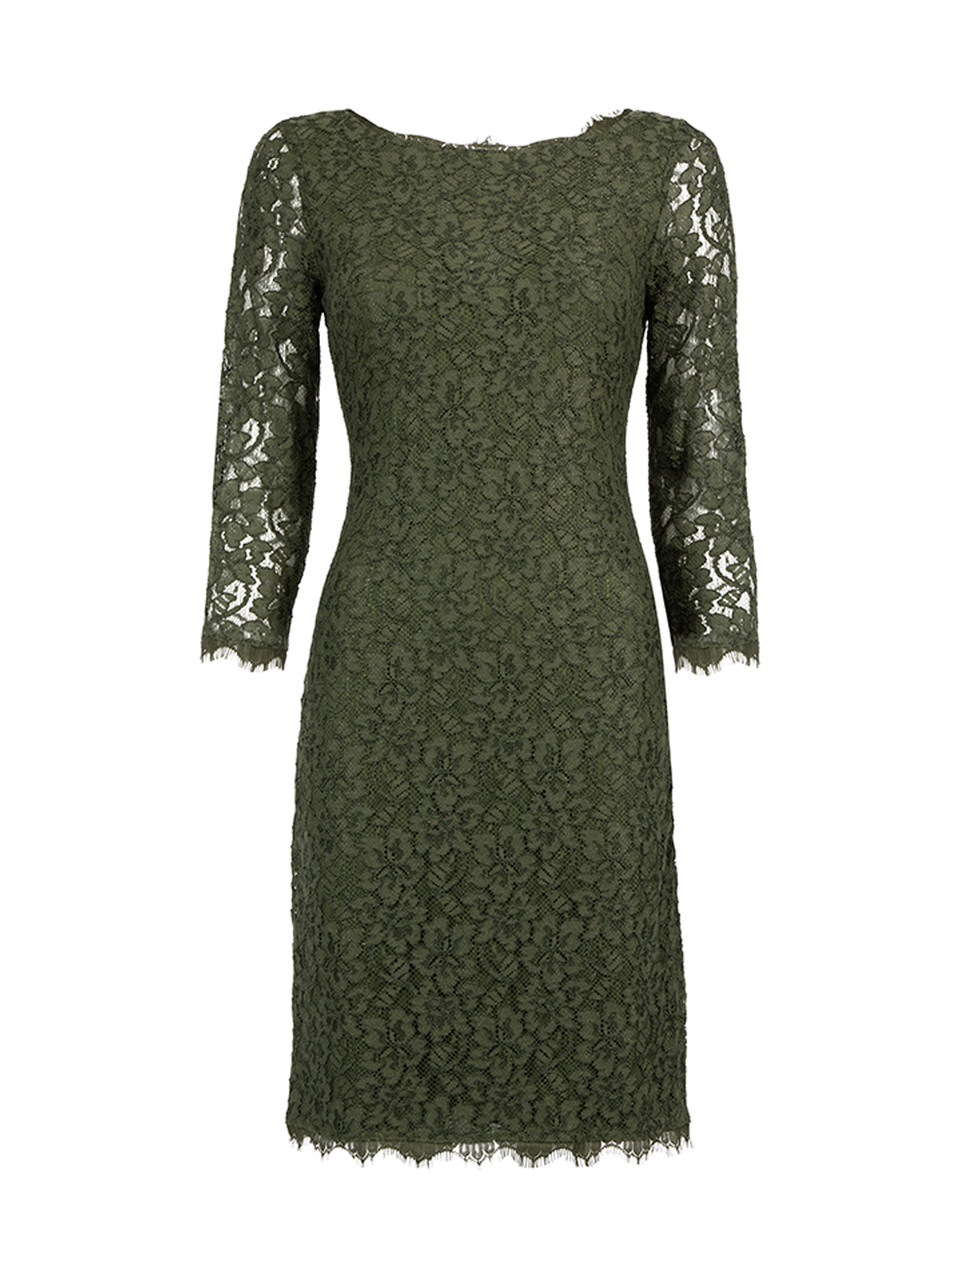 Diane Von Furstenberg Green Lace Zarita Dress